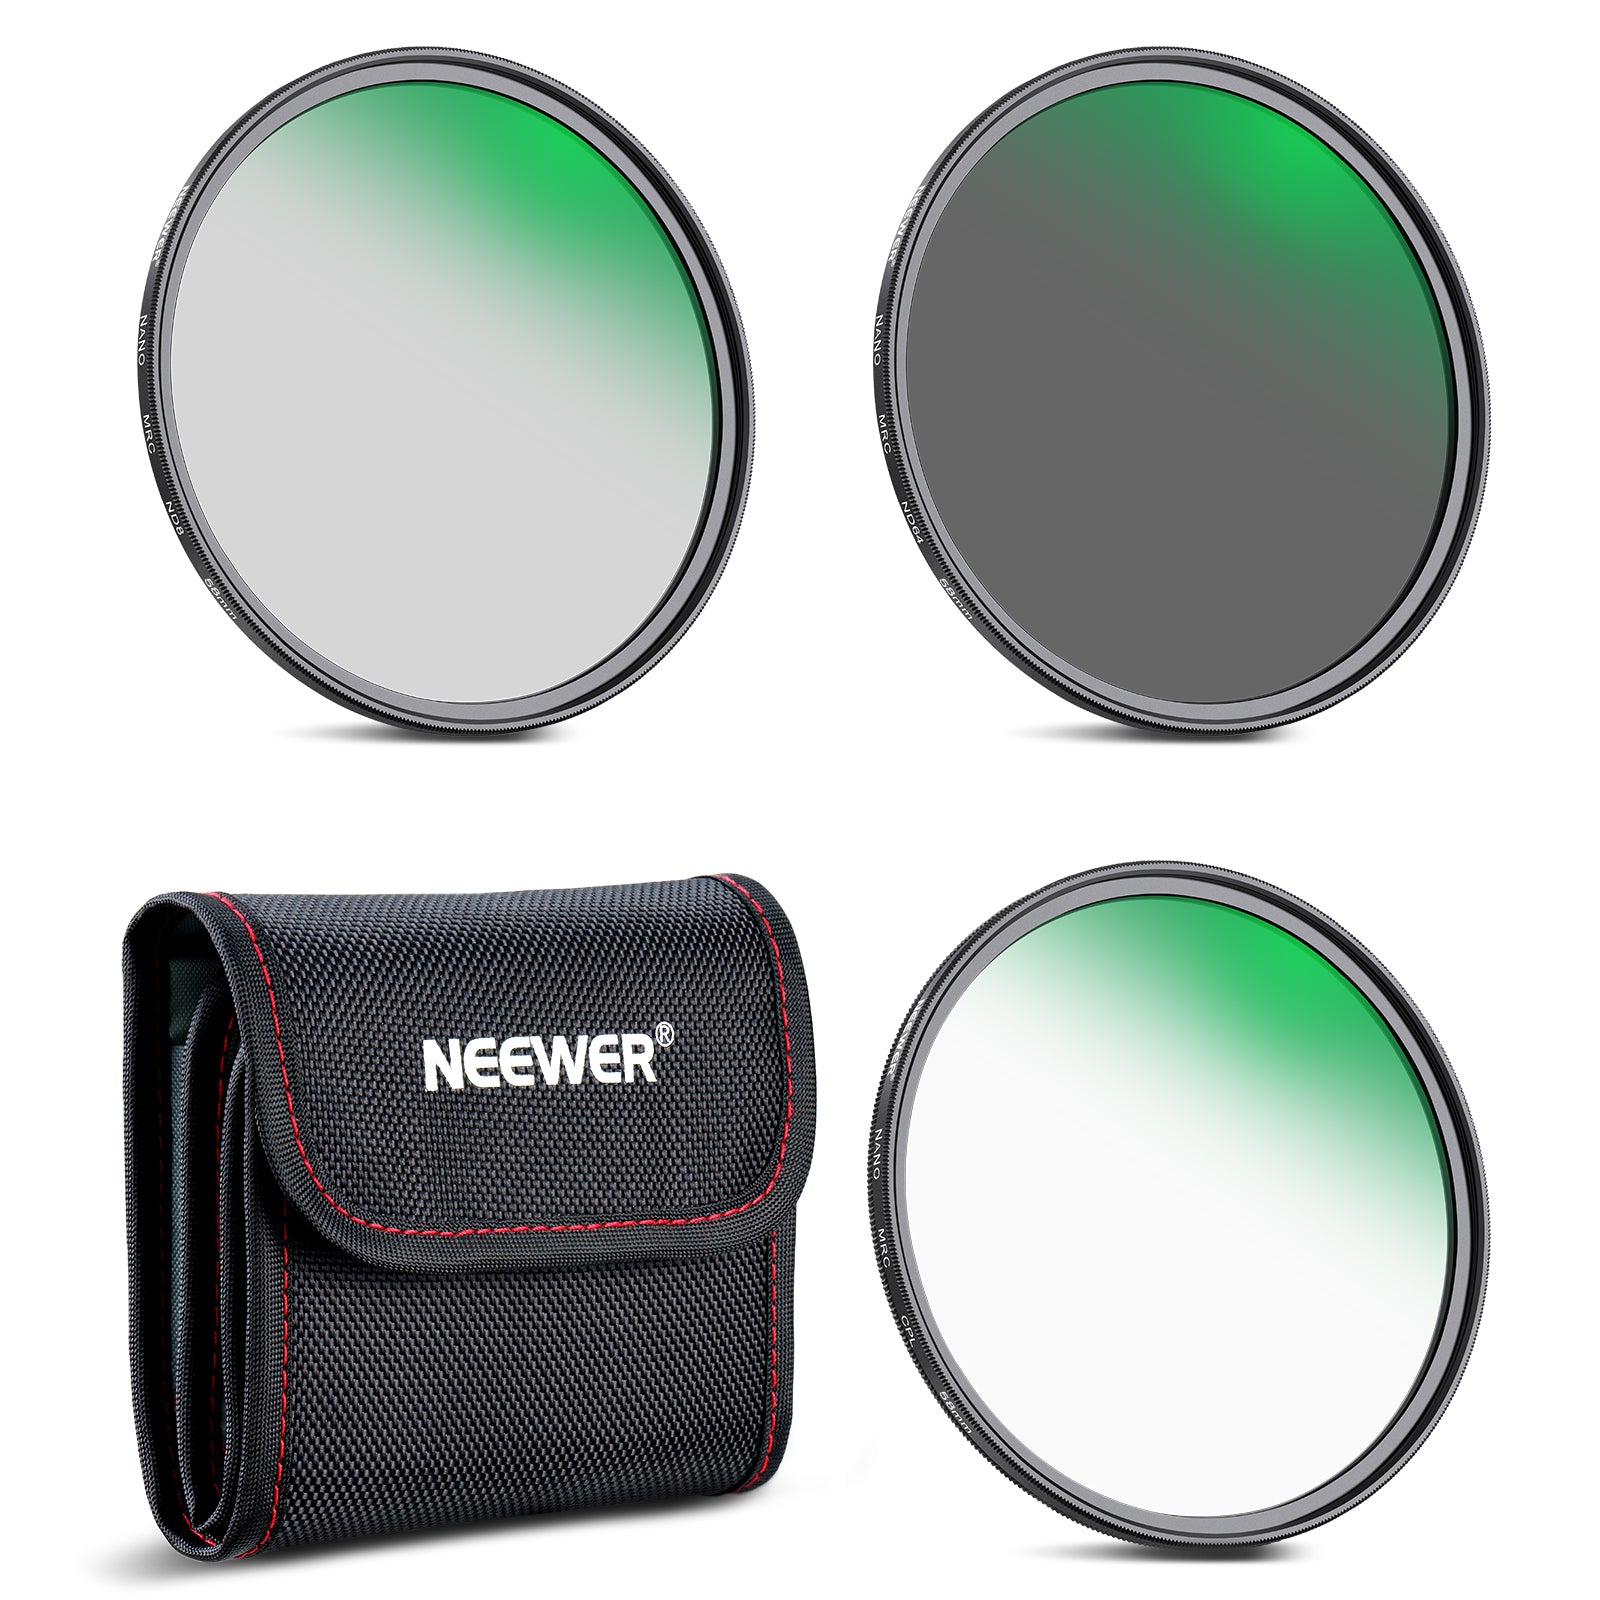 NEEWER 58/72/77mm Lens Filter Kit ND8 ND64 CPL Filter Set - NEEWER